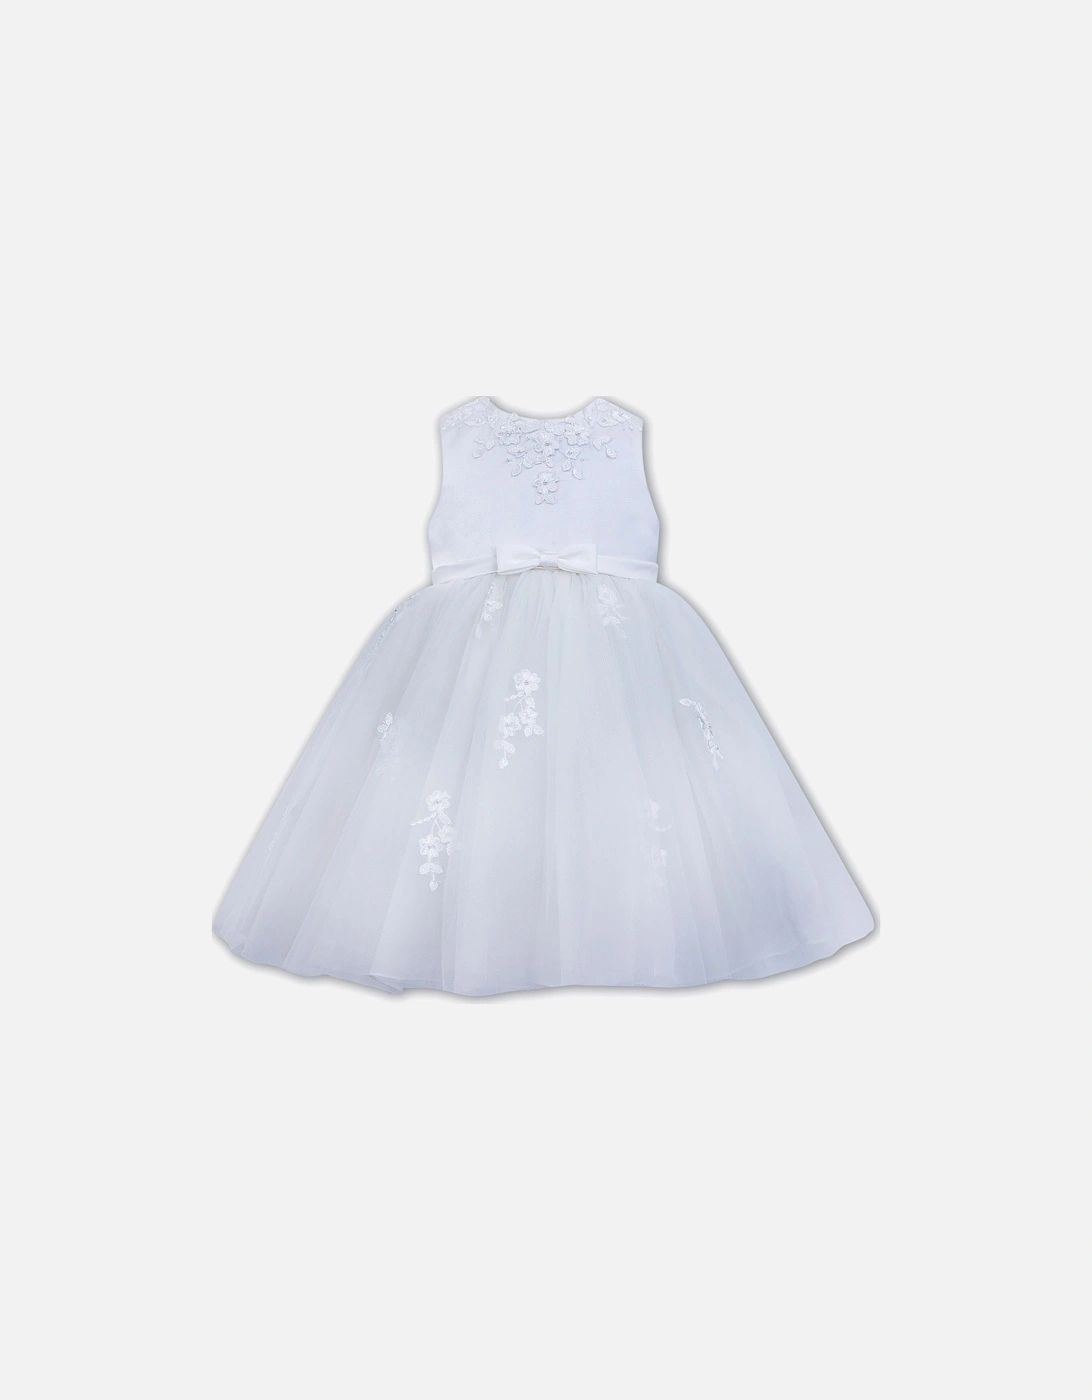 White Ballerina Length Dress, 2 of 1